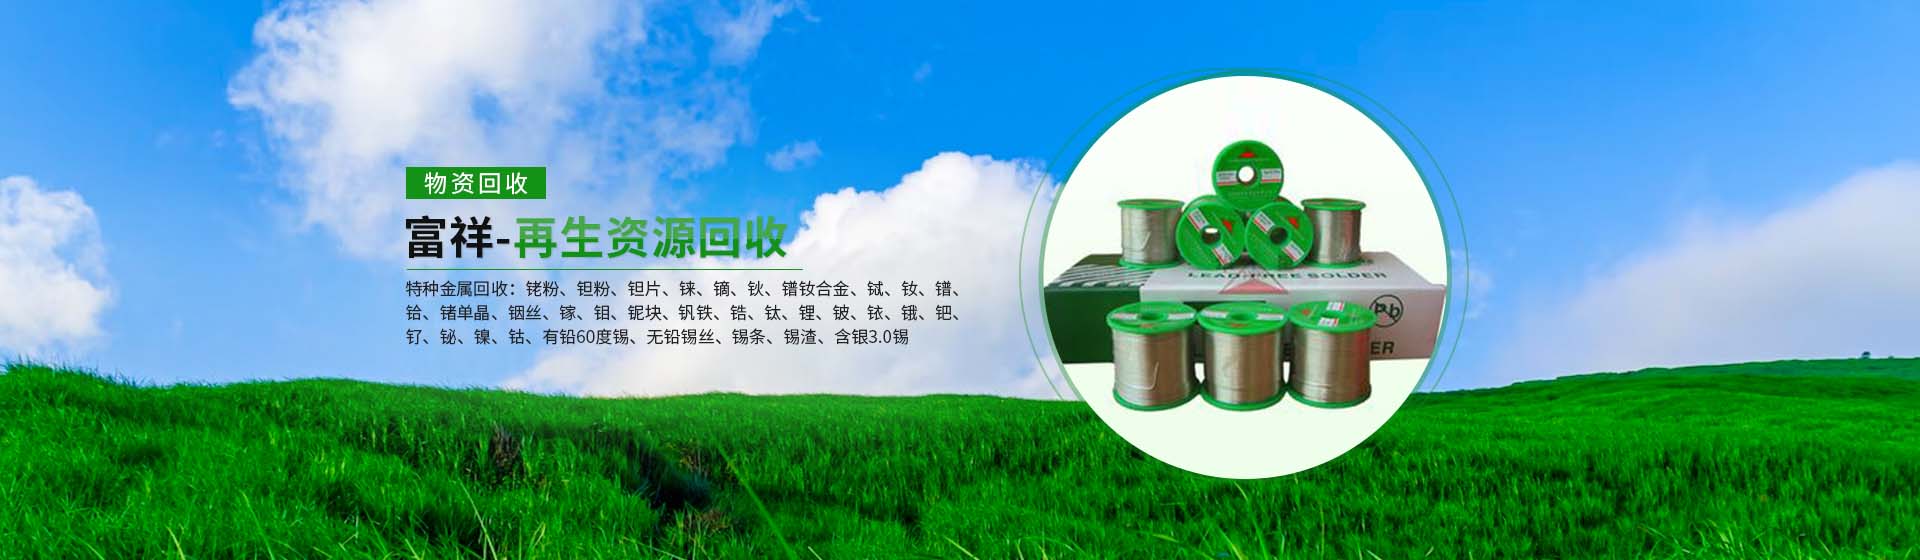 上海富祥再生资源回收有限公司  